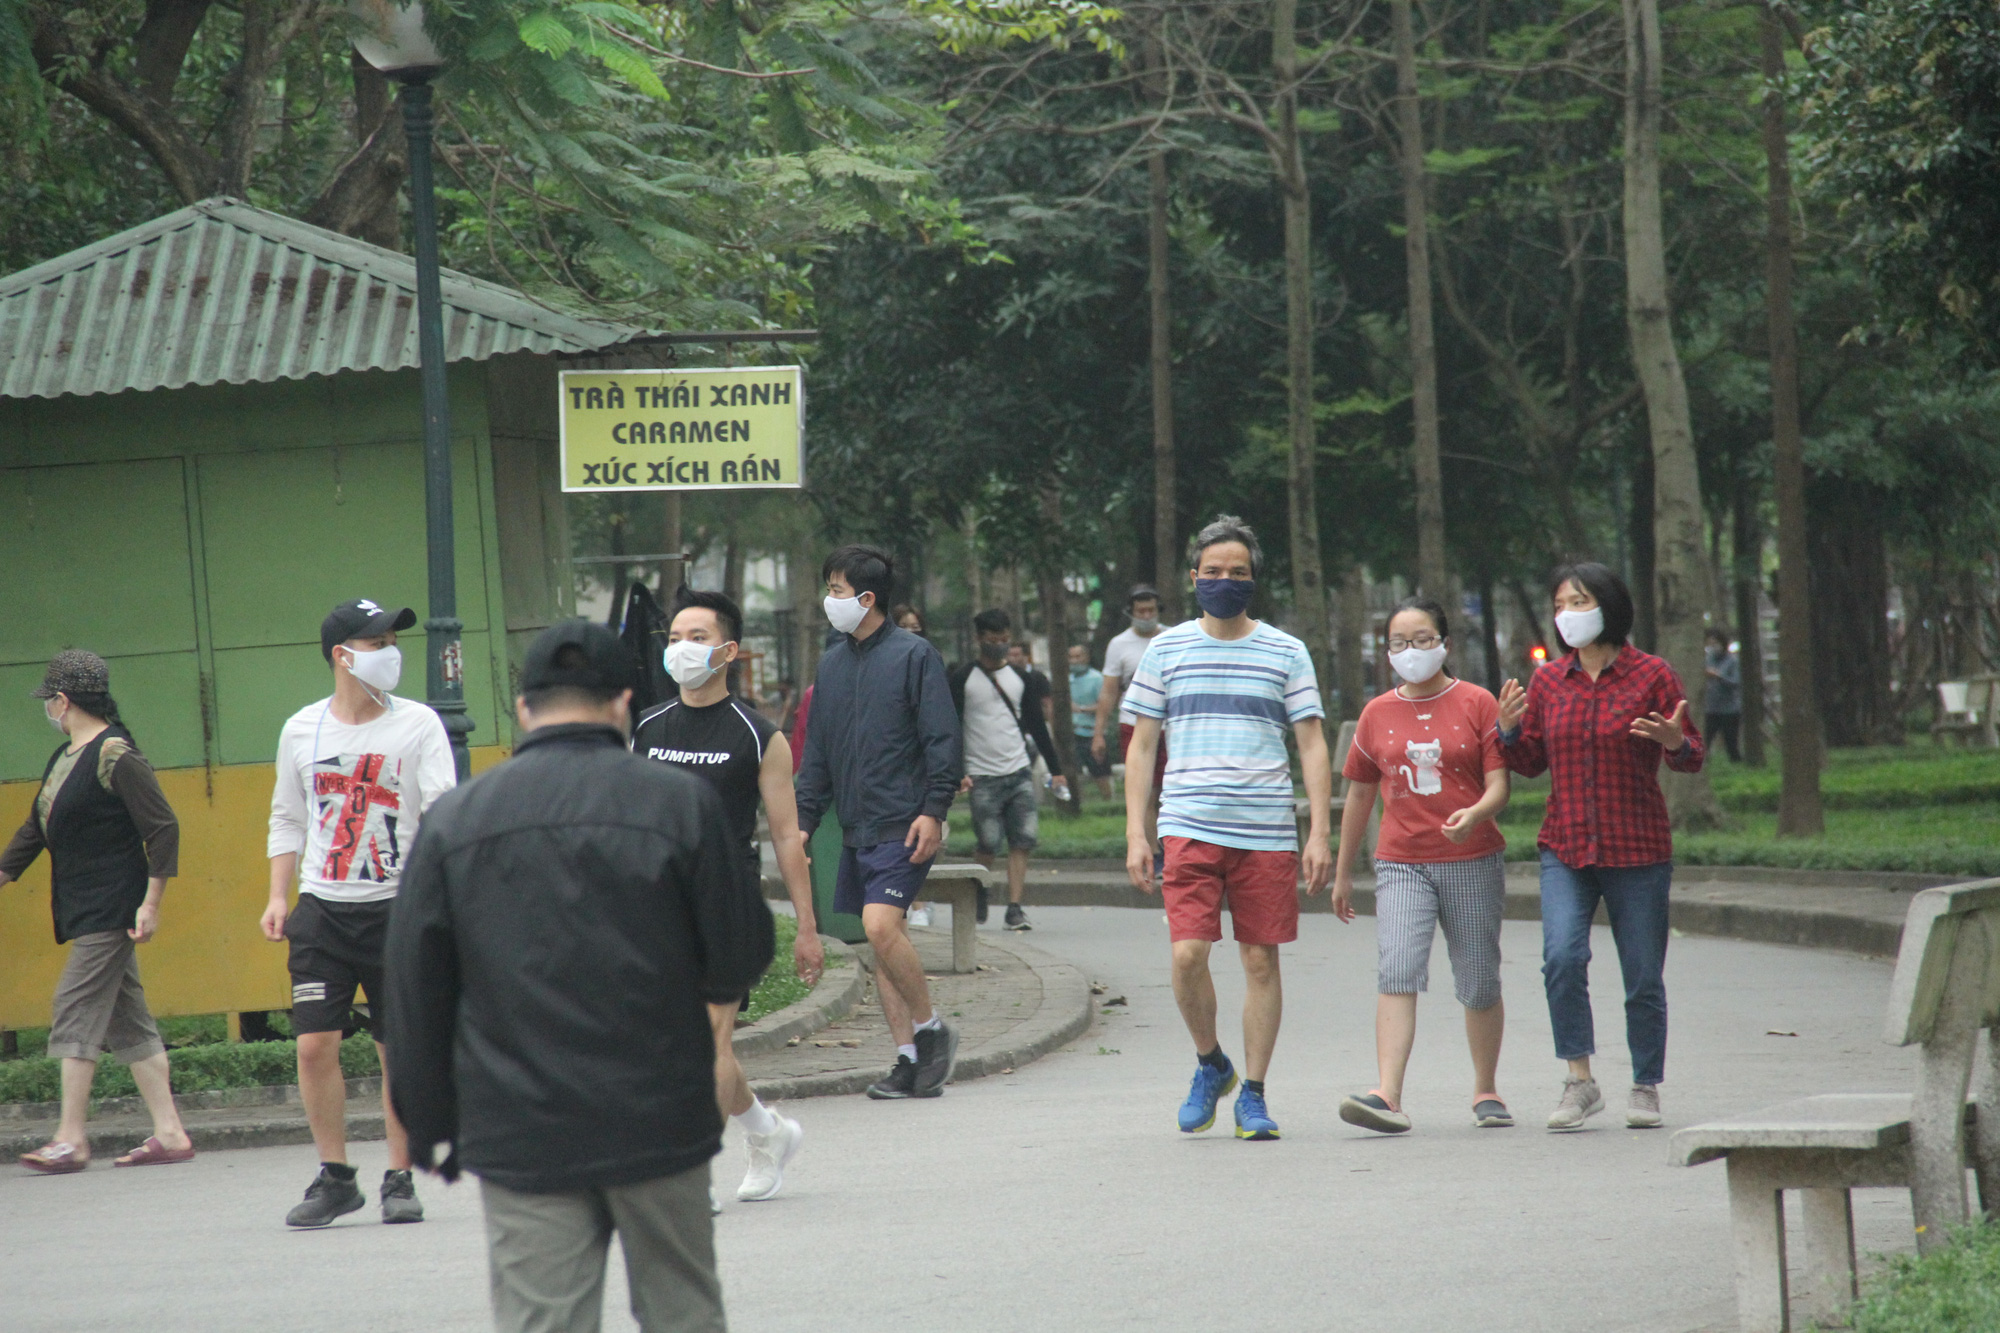 ẢNH: Bất chấp quy định xử phạt hành chính, nhiều người dân ở Hà Nội và Sài Gòn vẫn không đeo khẩu trang đến công viên tập thể dục - Ảnh 4.